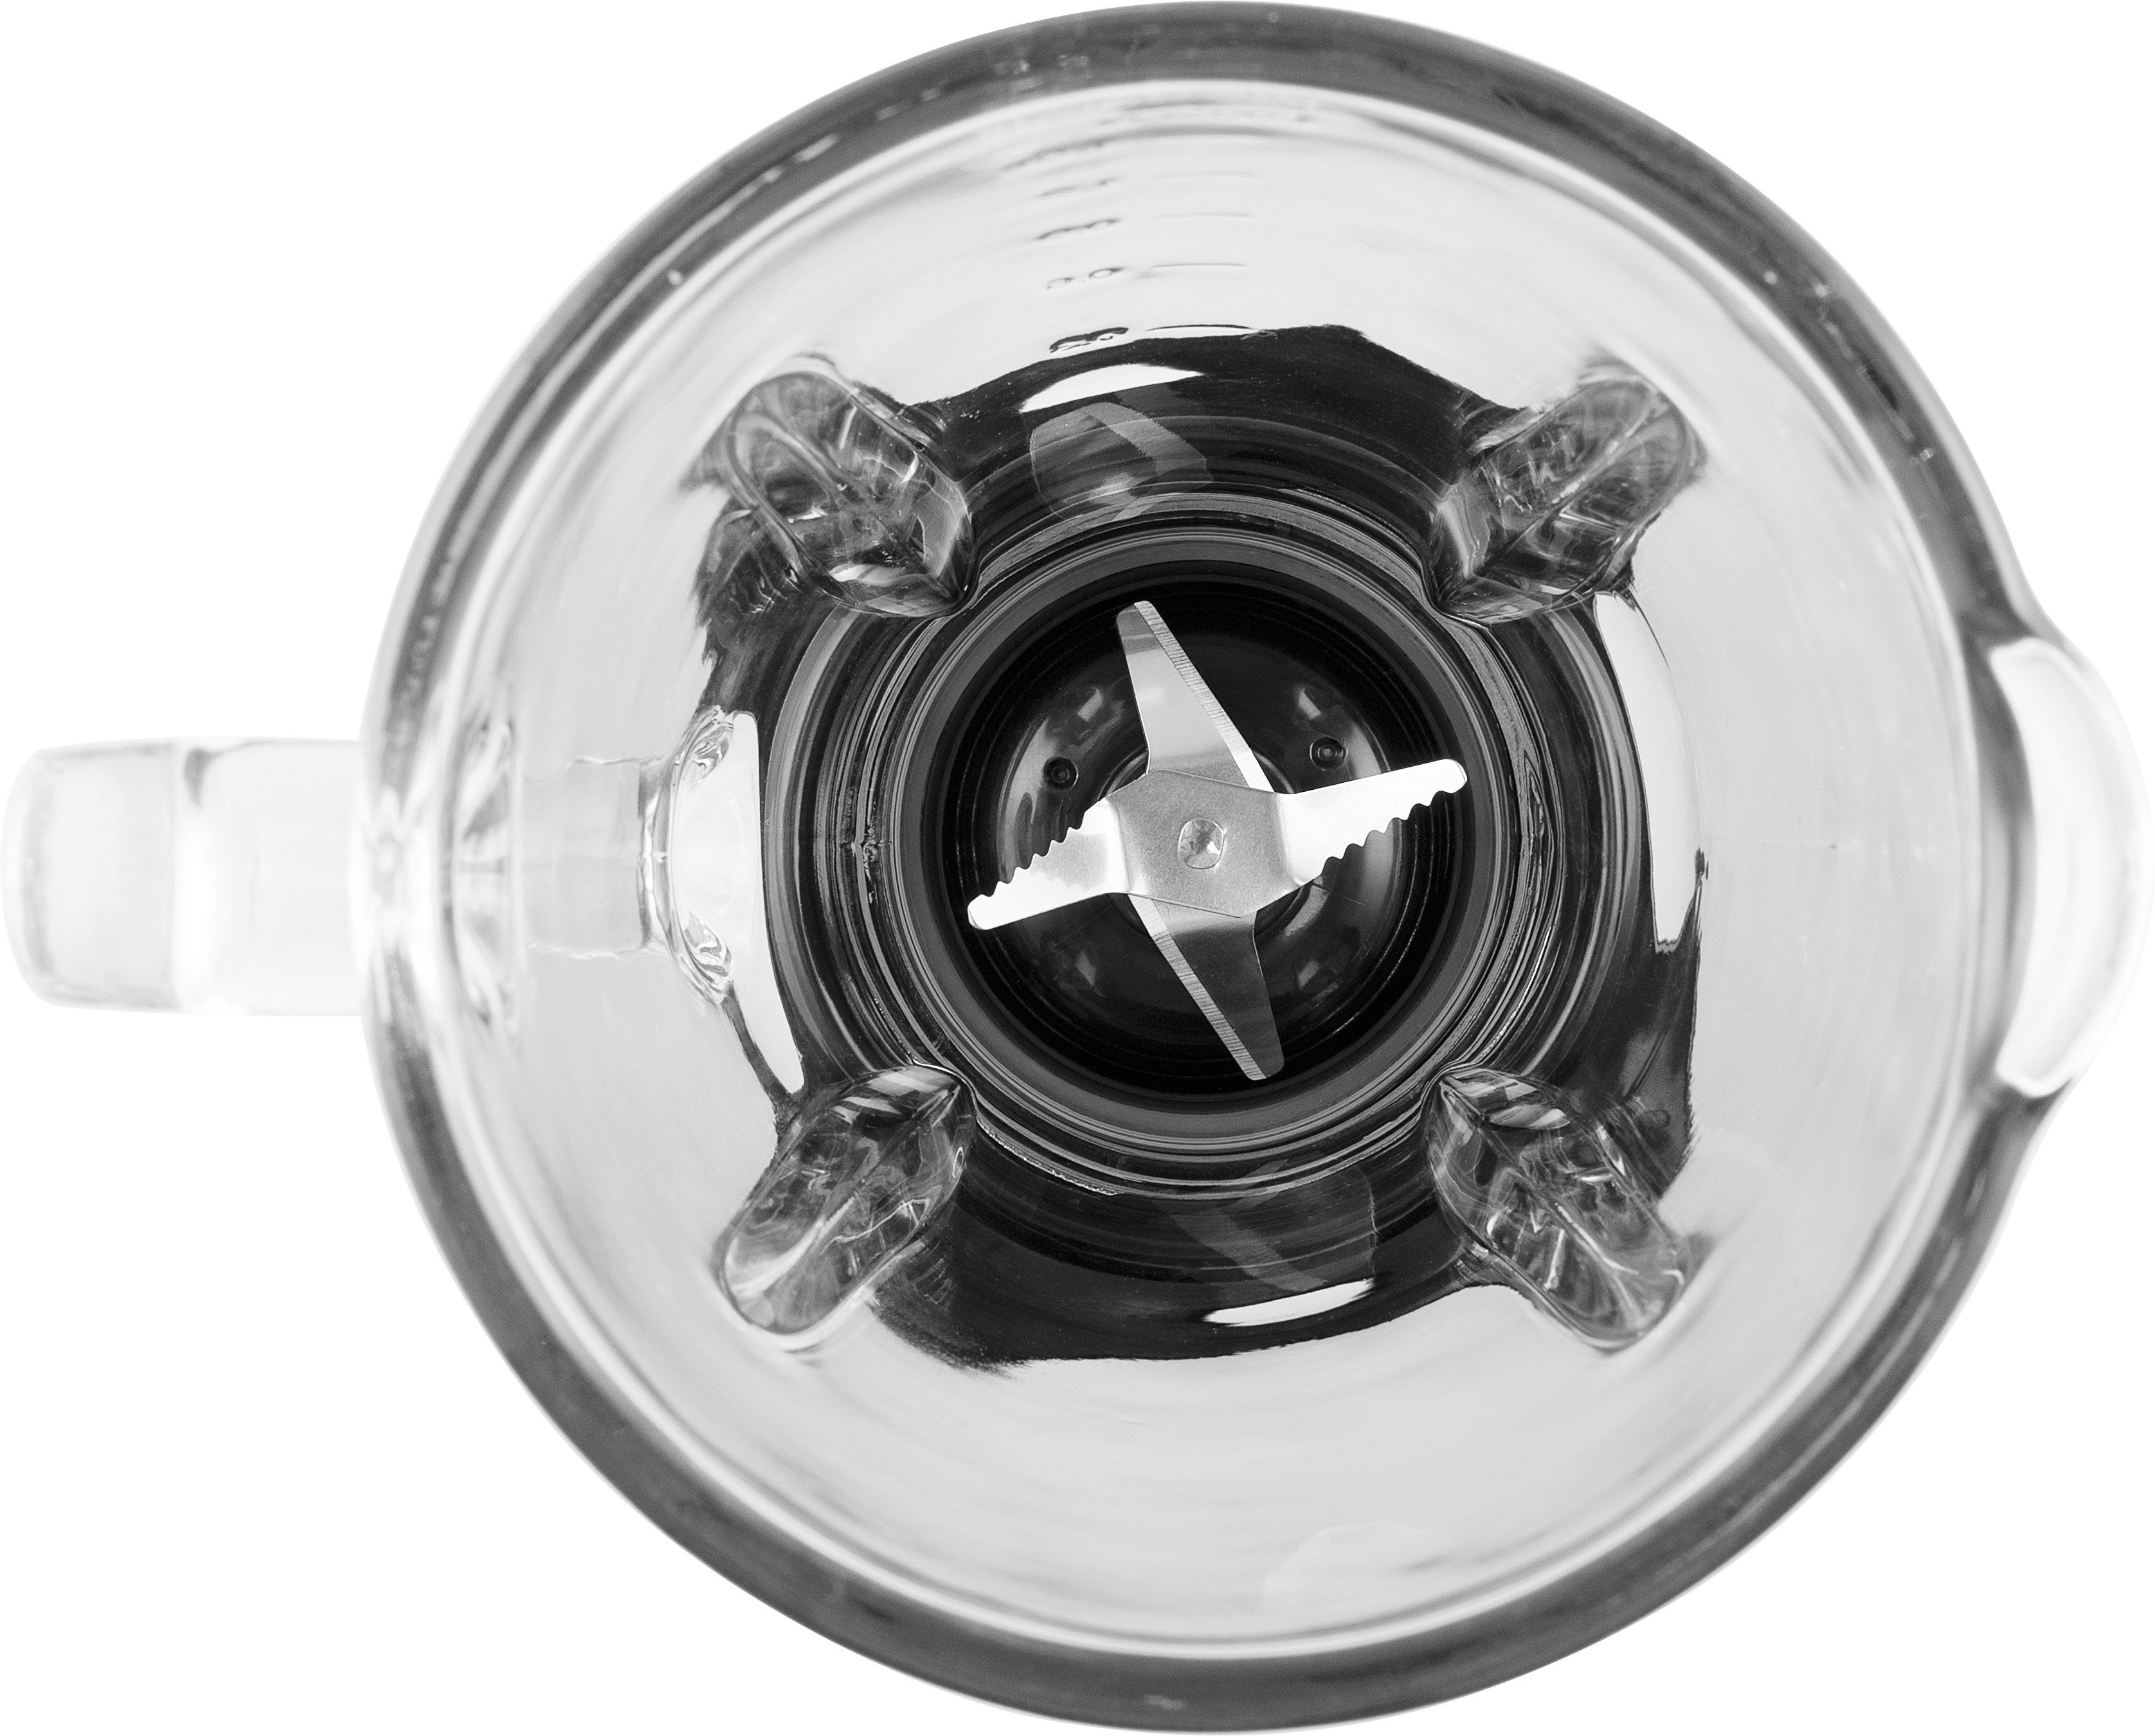 Edelstahlgehäuse Tristar 1000 Watt - 1000 - Mixer W, BL-4471, Standmixer 1,5-Liter-Glaskrug